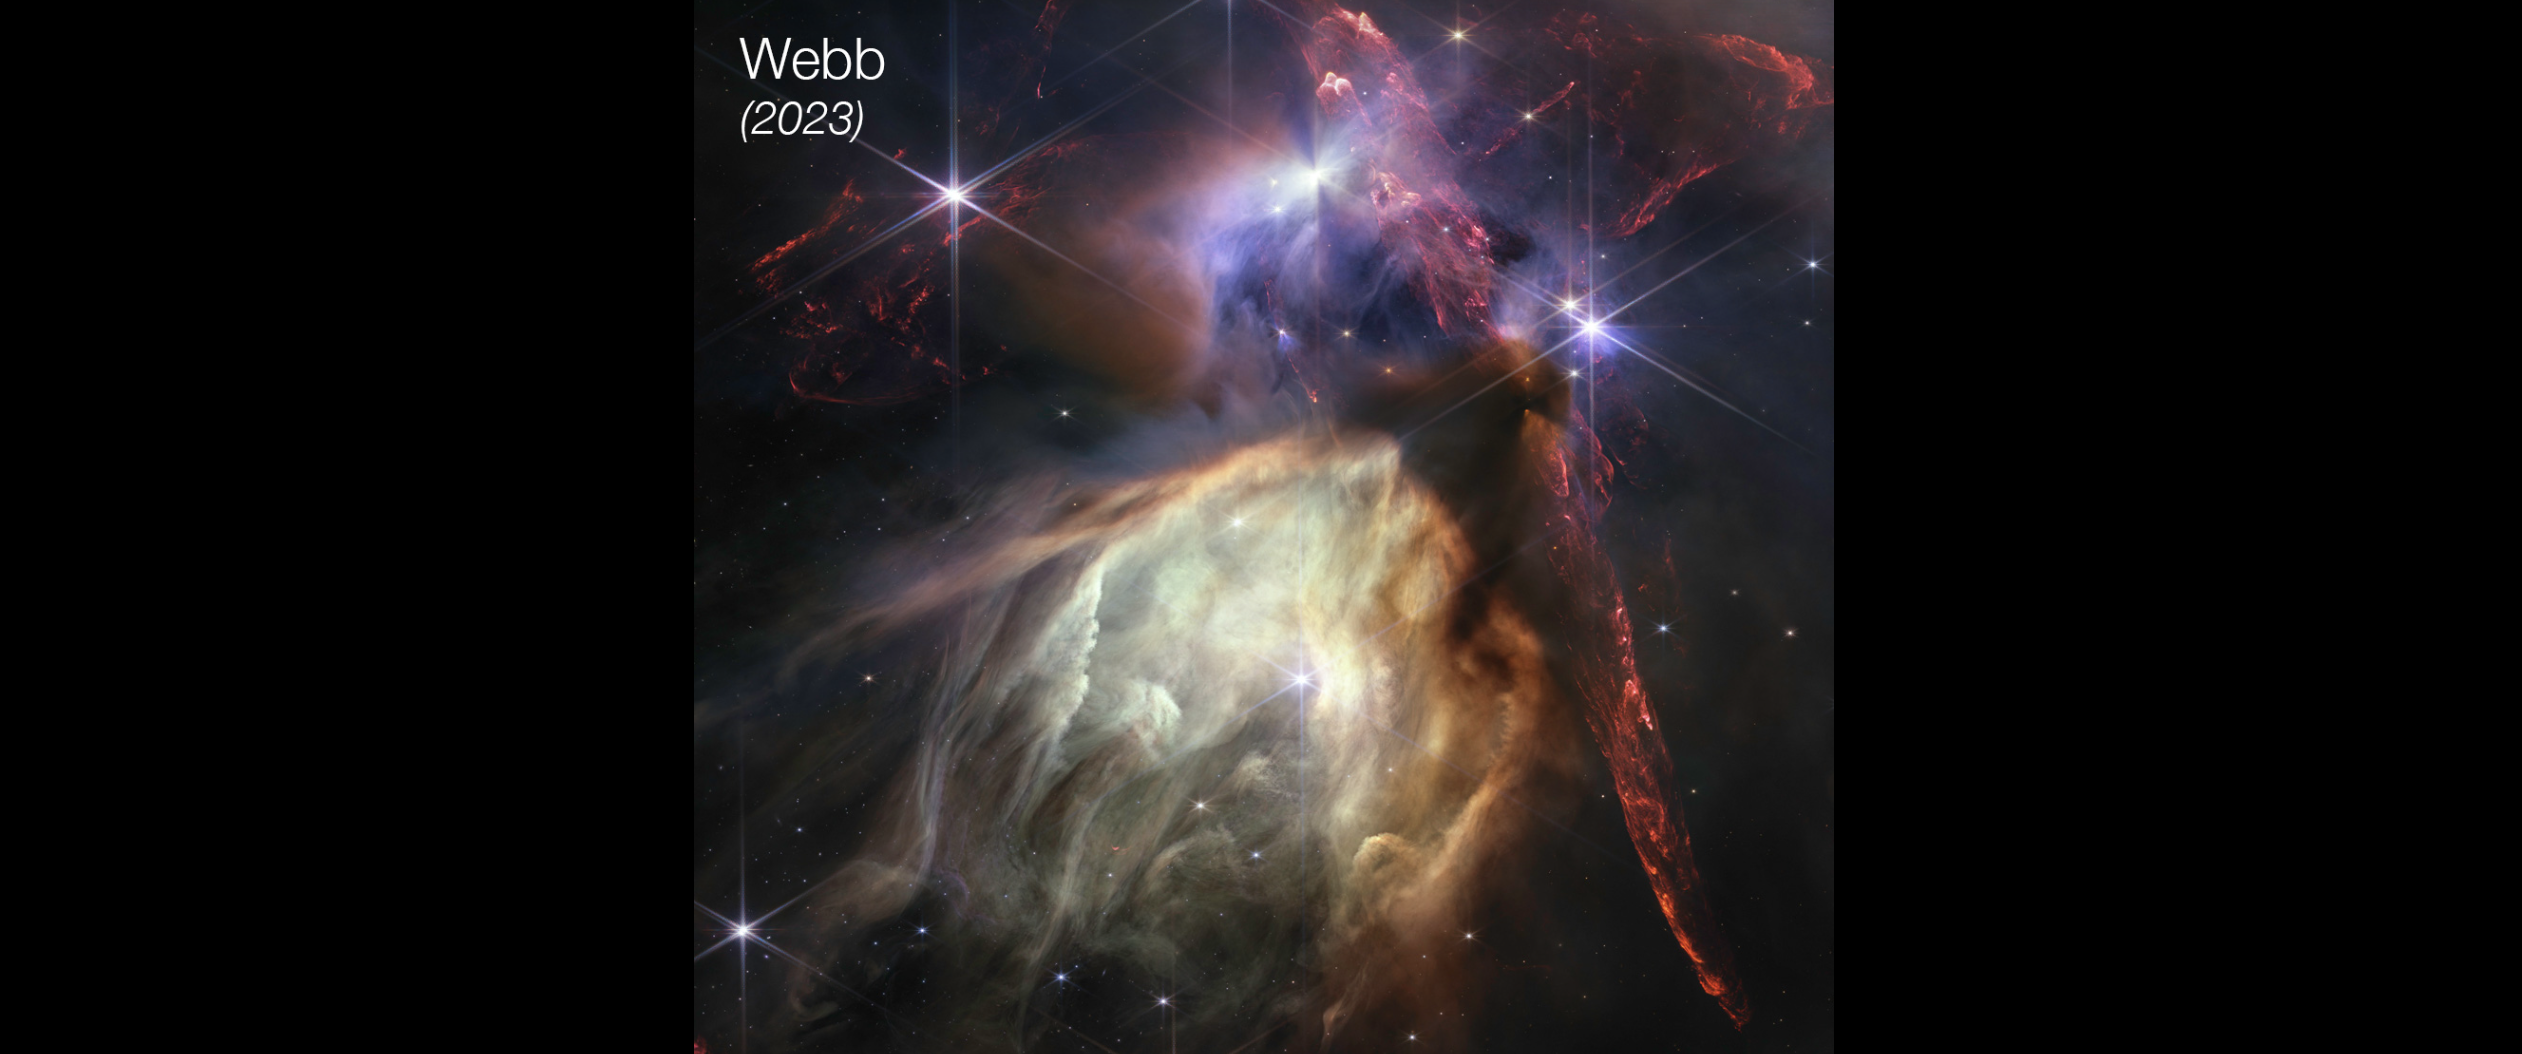 Imagen de la región de formación estelar ro Ofiuco captada por el telescopio Webb en 2023.